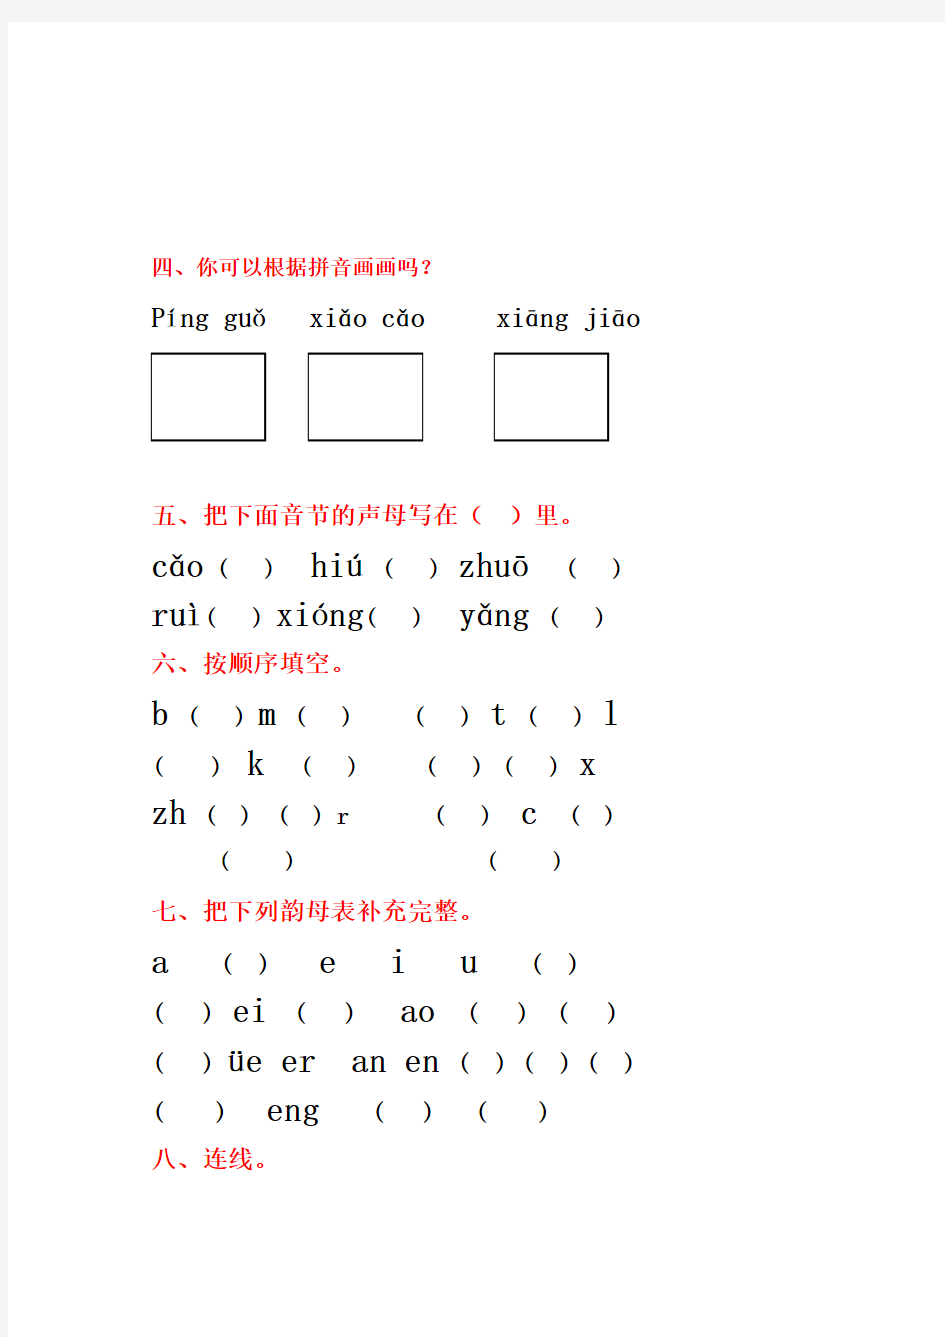 小学一年级汉语拼音基础练习题(全)教程文件